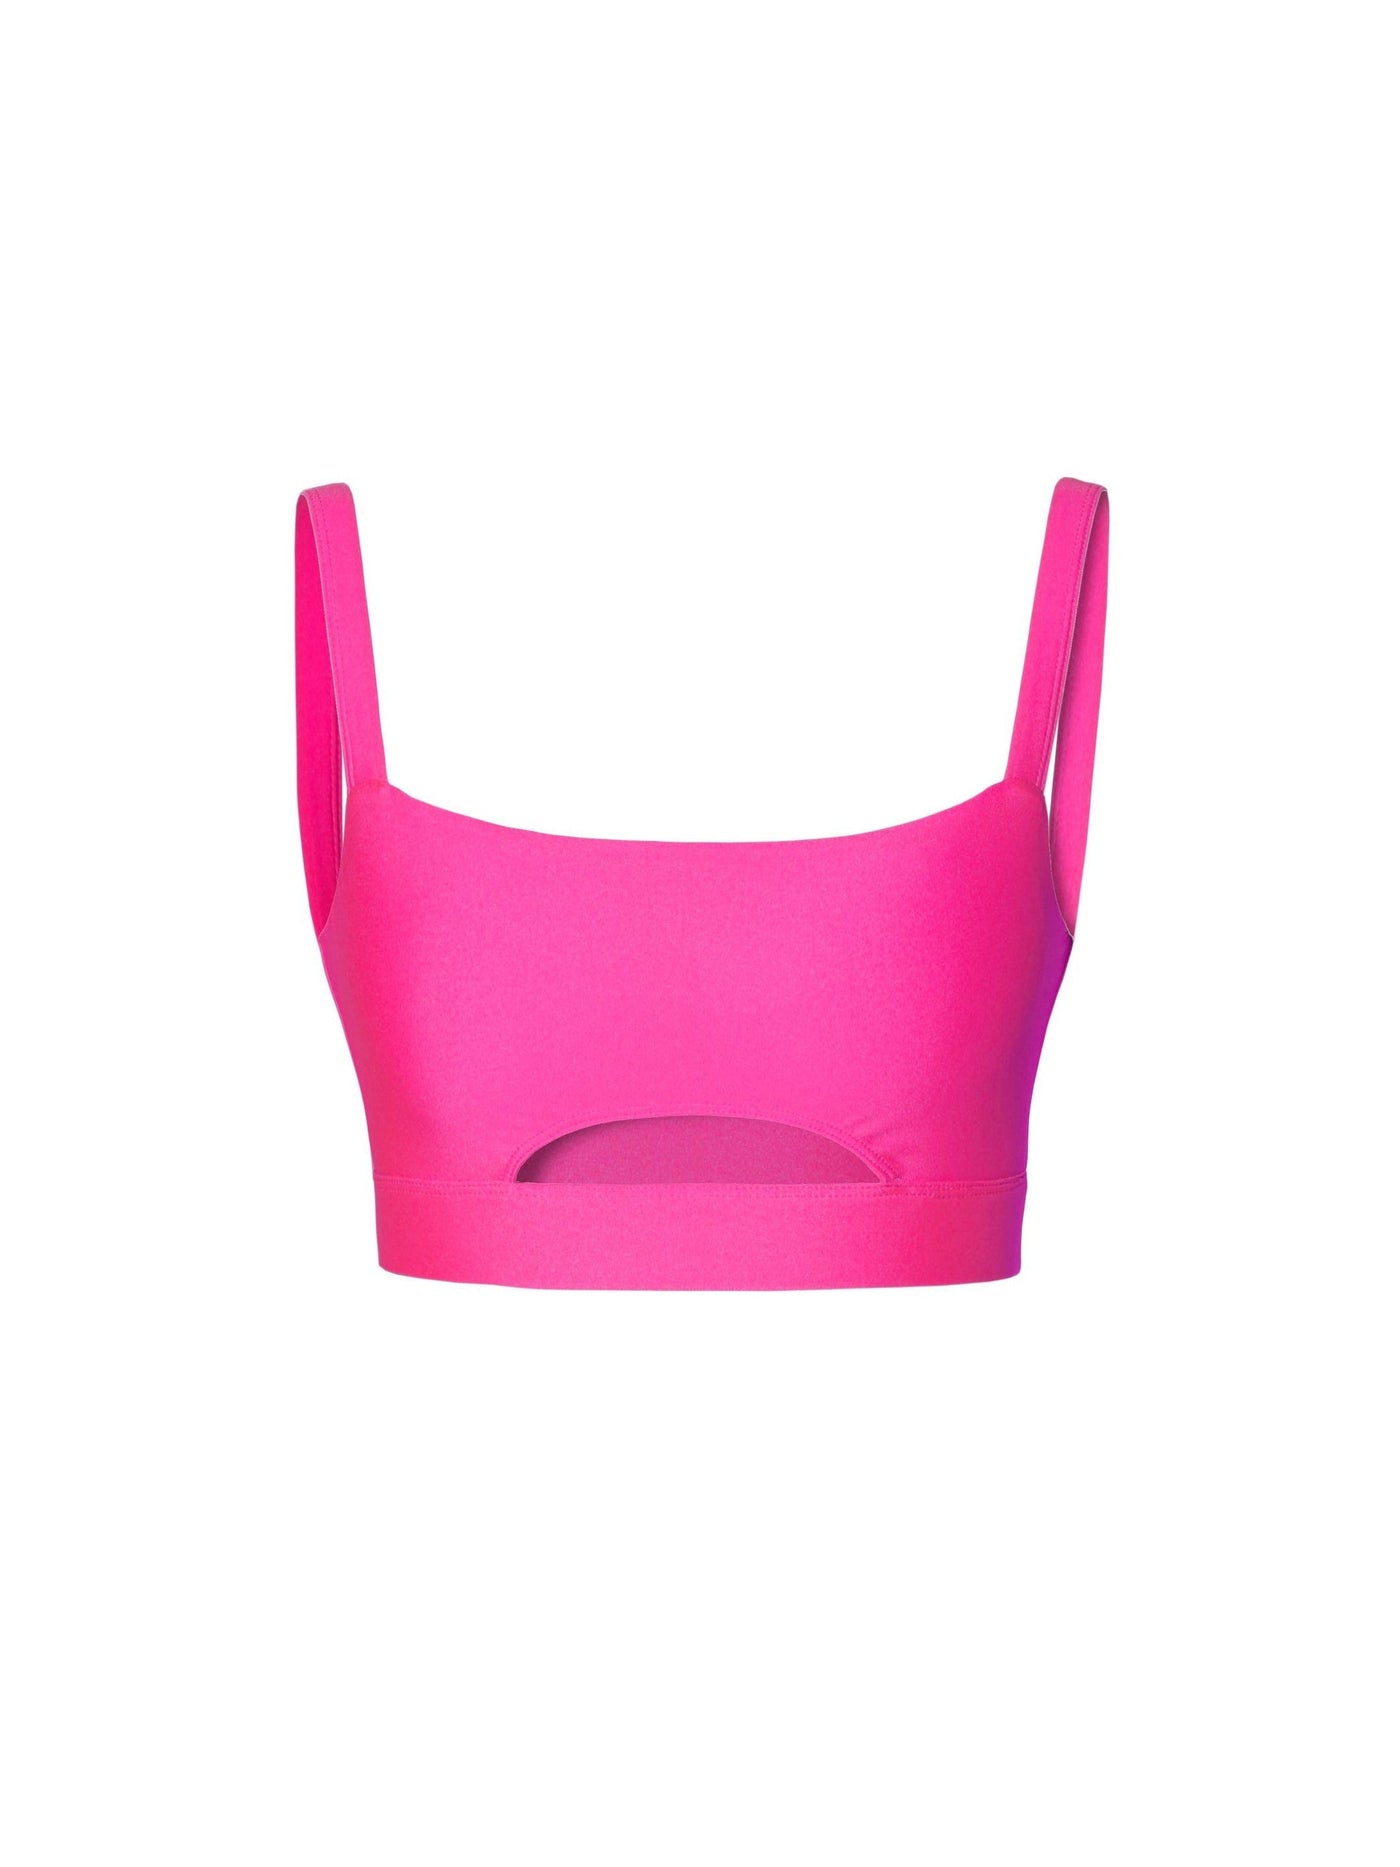 Joy Plastic Pink Top